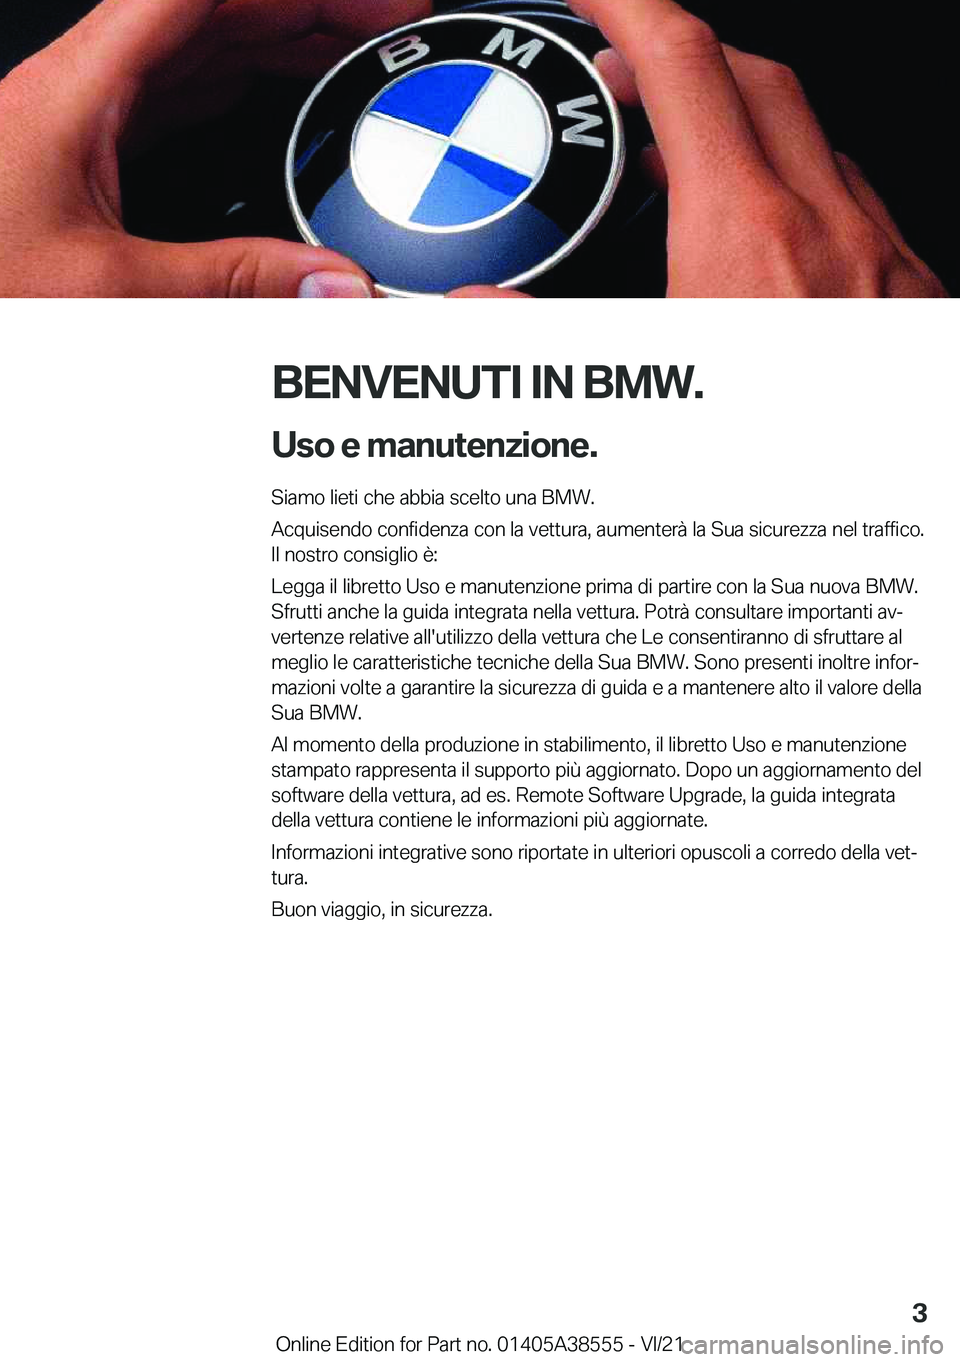 BMW X6 2022  Libretti Di Uso E manutenzione (in Italian) �B�E�N�V�E�N�U�T�I��I�N��B�M�W�.�U�s�o��e��m�a�n�u�t�e�n�z�i�o�n�e�.
�S�i�a�m�o��l�i�e�t�i��c�h�e��a�b�b�i�a��s�c�e�l�t�o��u�n�a��B�M�W�.
�A�c�q�u�i�s�e�n�d�o��c�o�n�f�i�d�e�n�z�a��c�o�n�